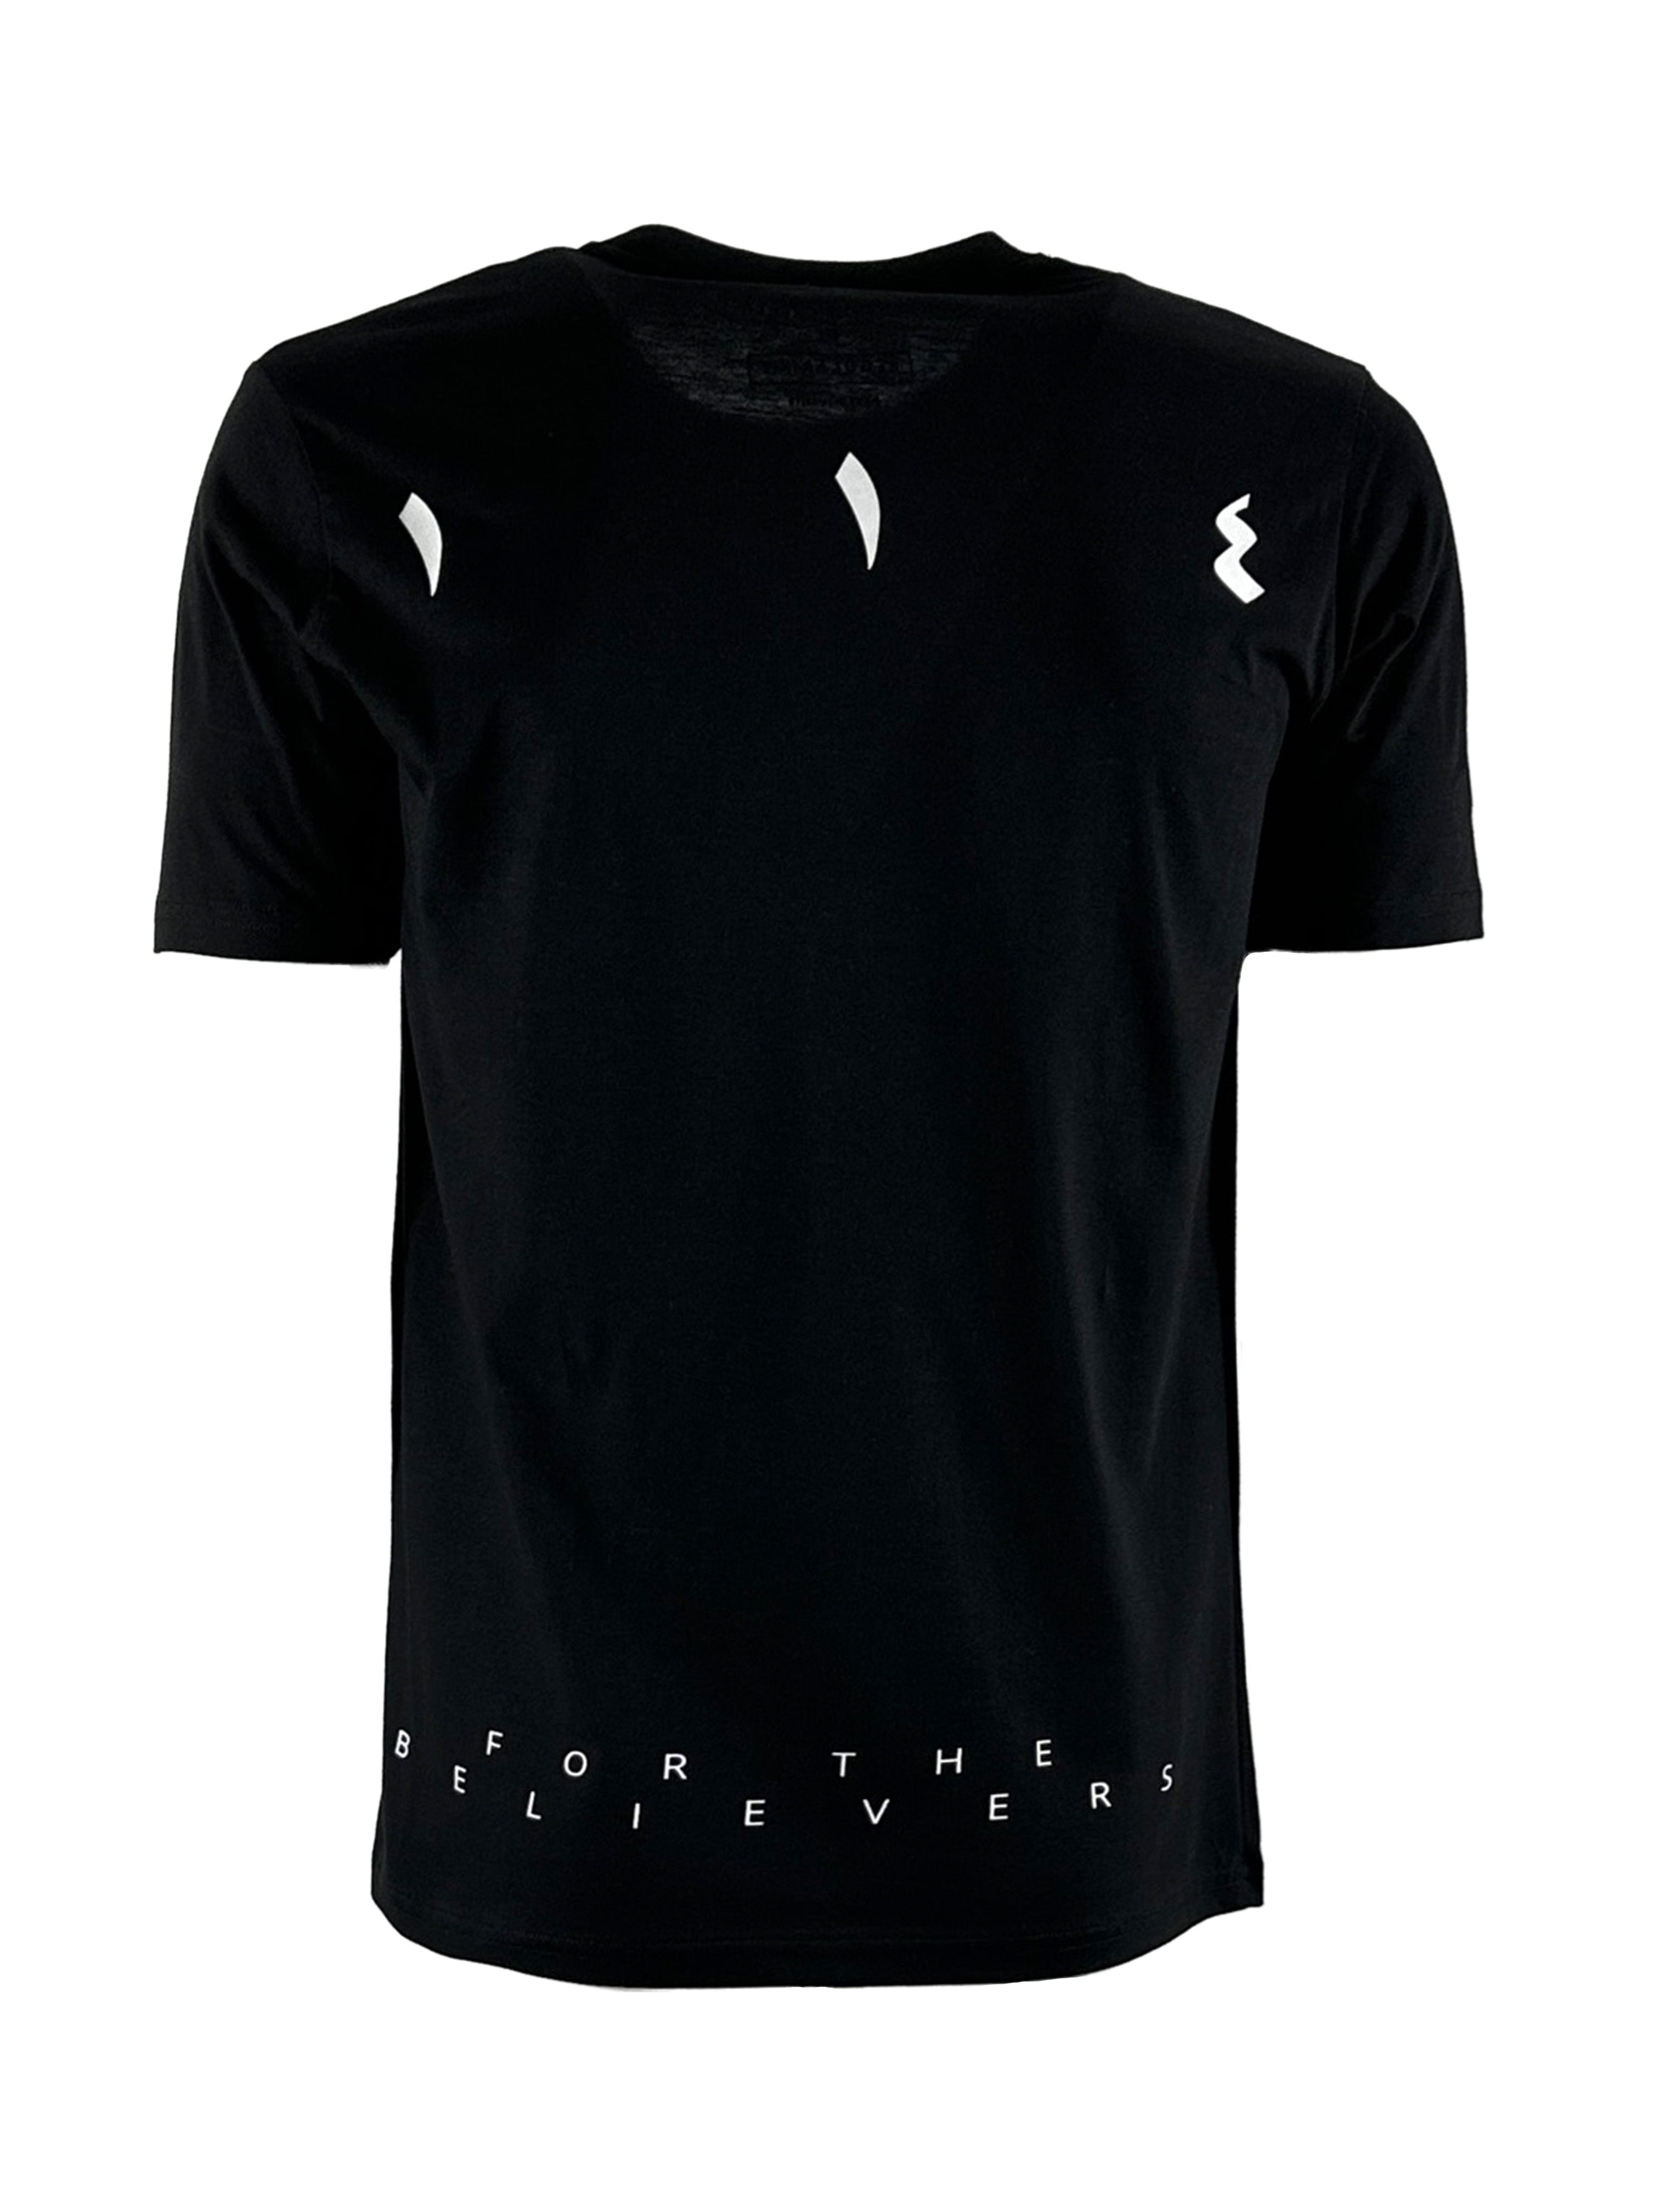 Berlin black men's T-shirt - One fourteen apparel